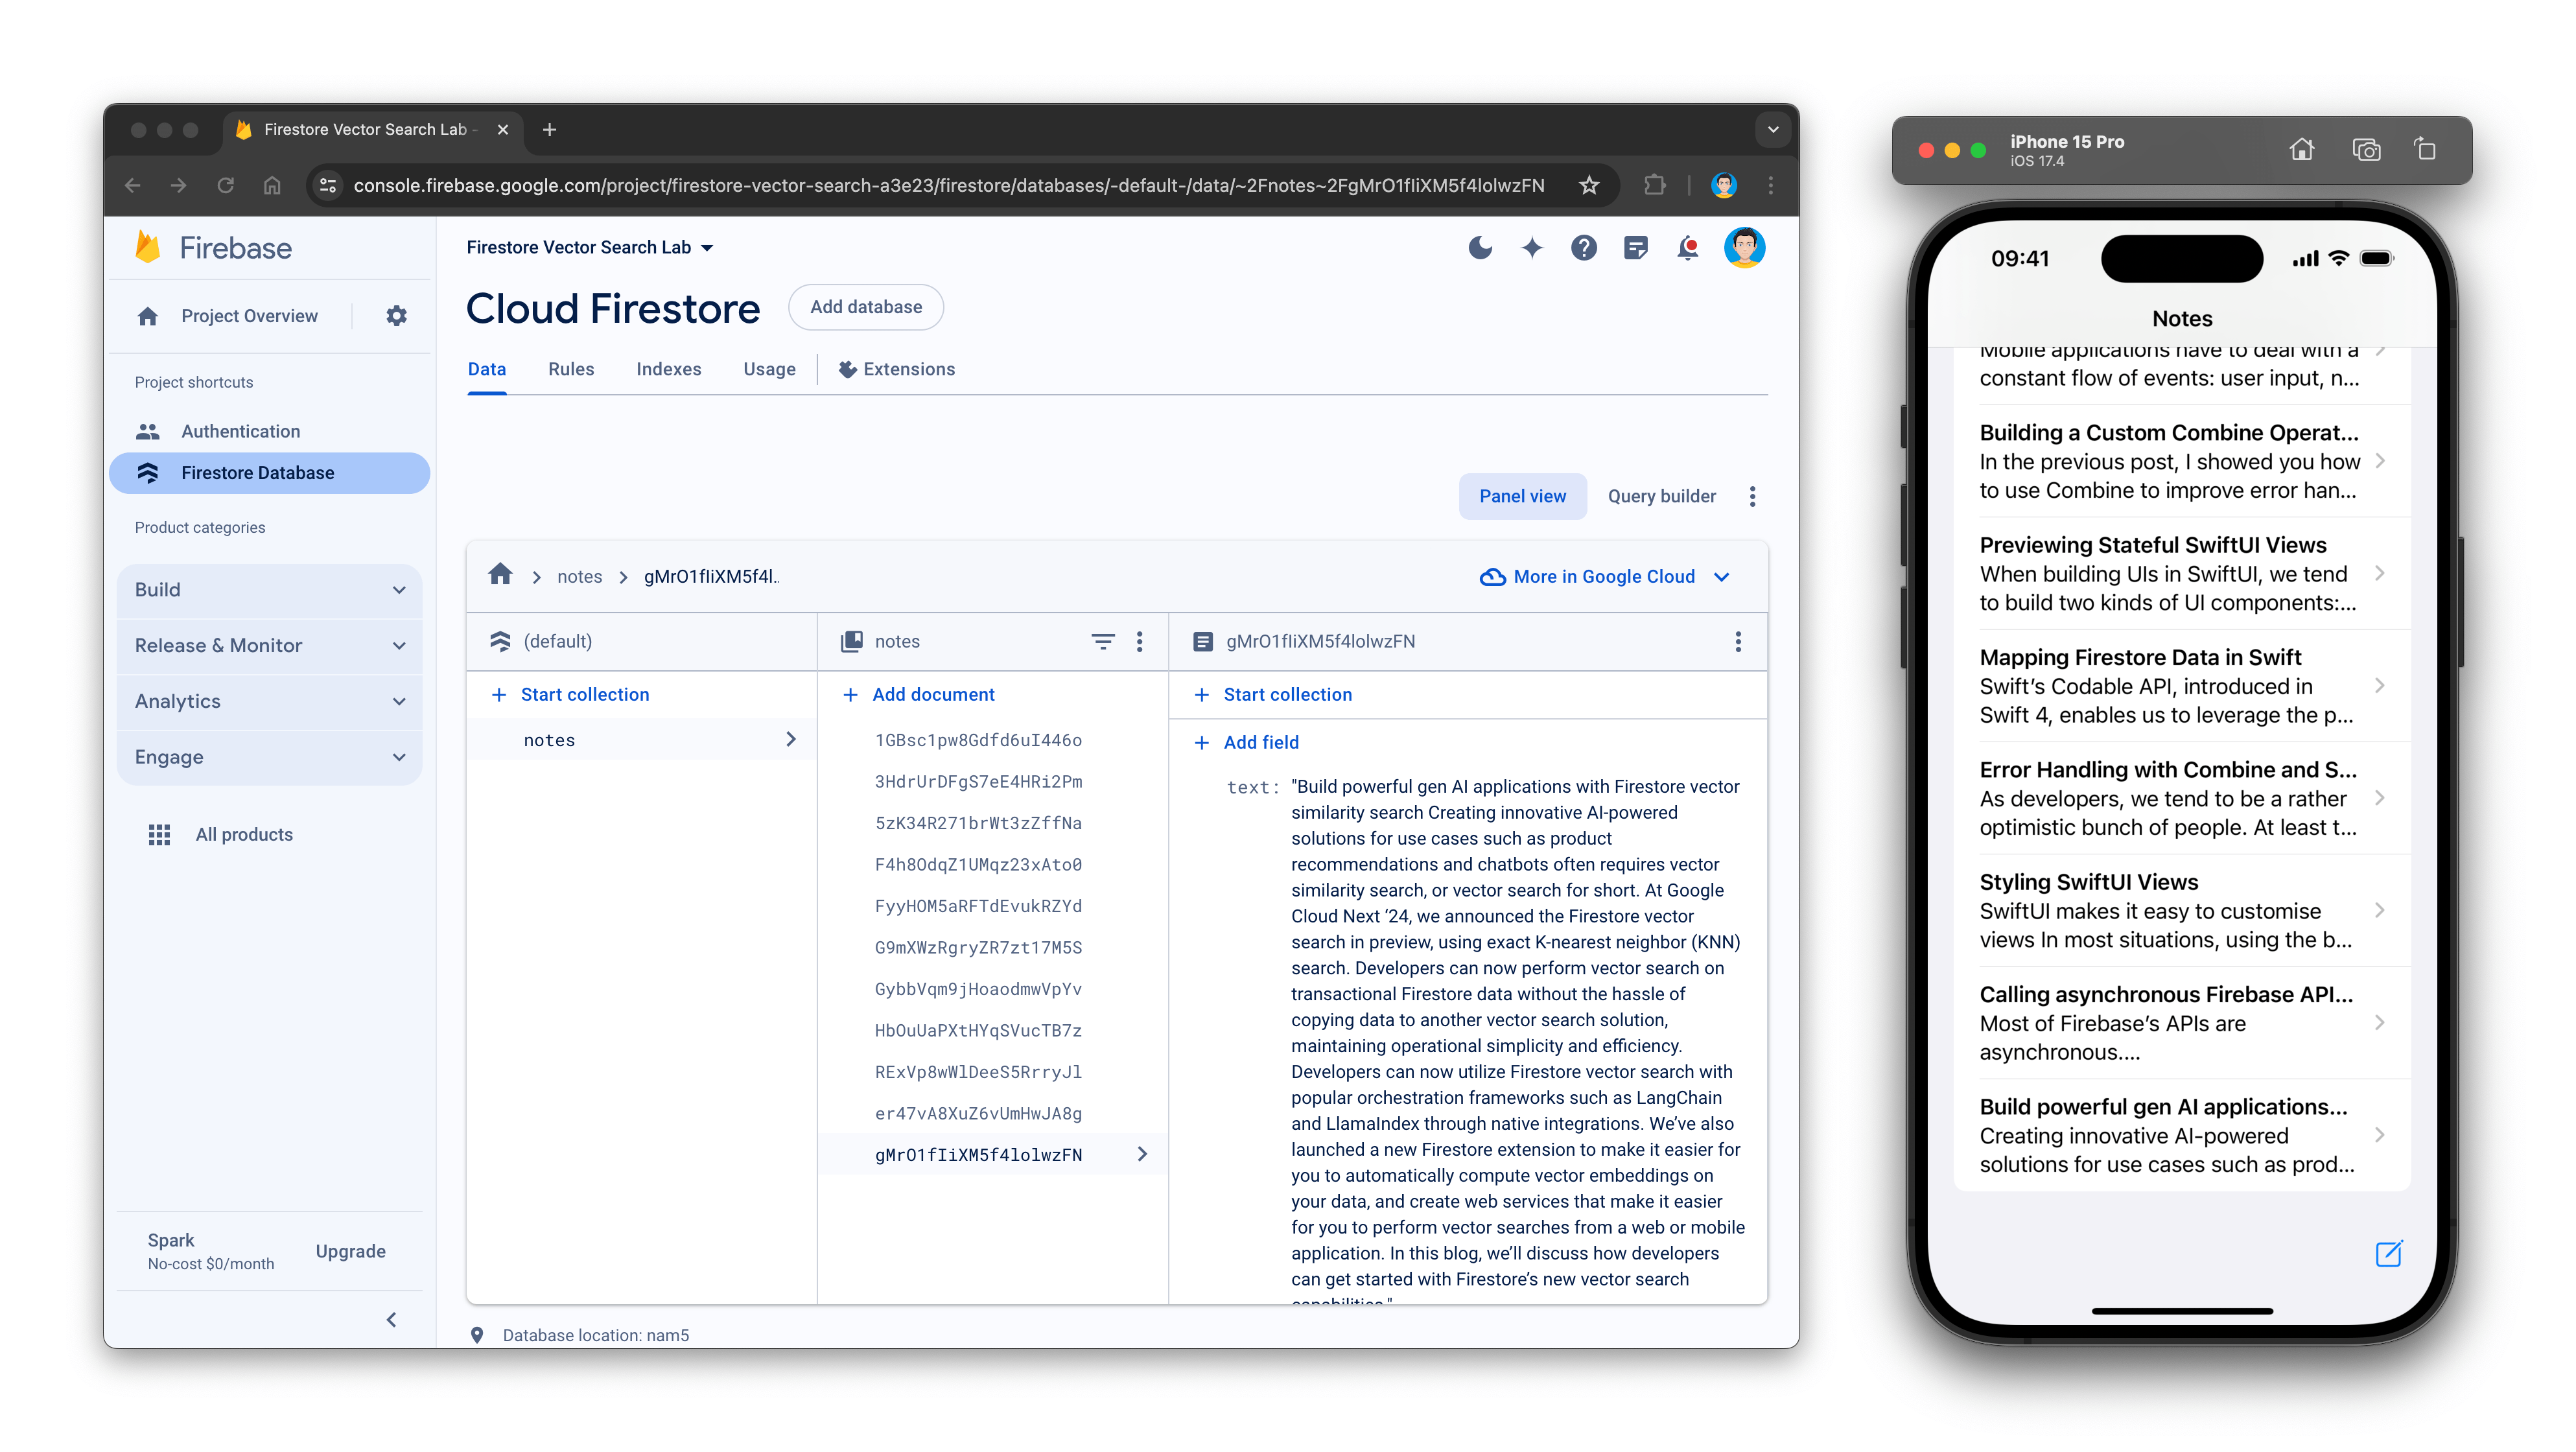 Console do Cloud Firestore mostrando alguns documentos, junto com o simulador de iOS, que mostra os mesmos documentos